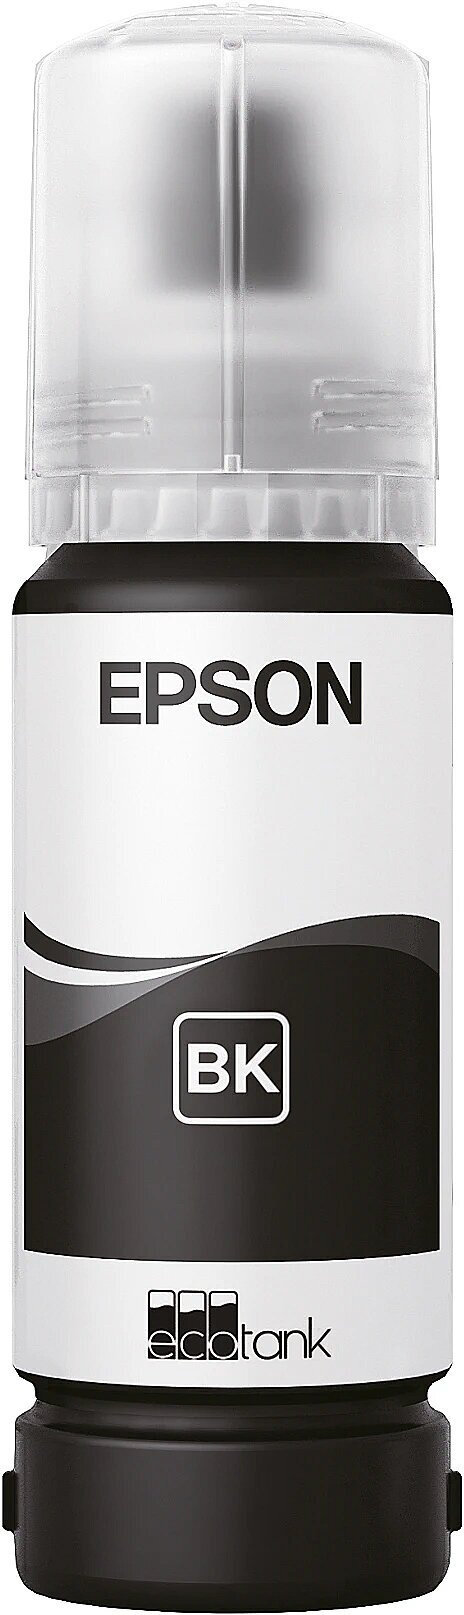 Контейнер Epson C13T09C14A 108 EcoTank Ink черный 70ml (L8050/L18050)